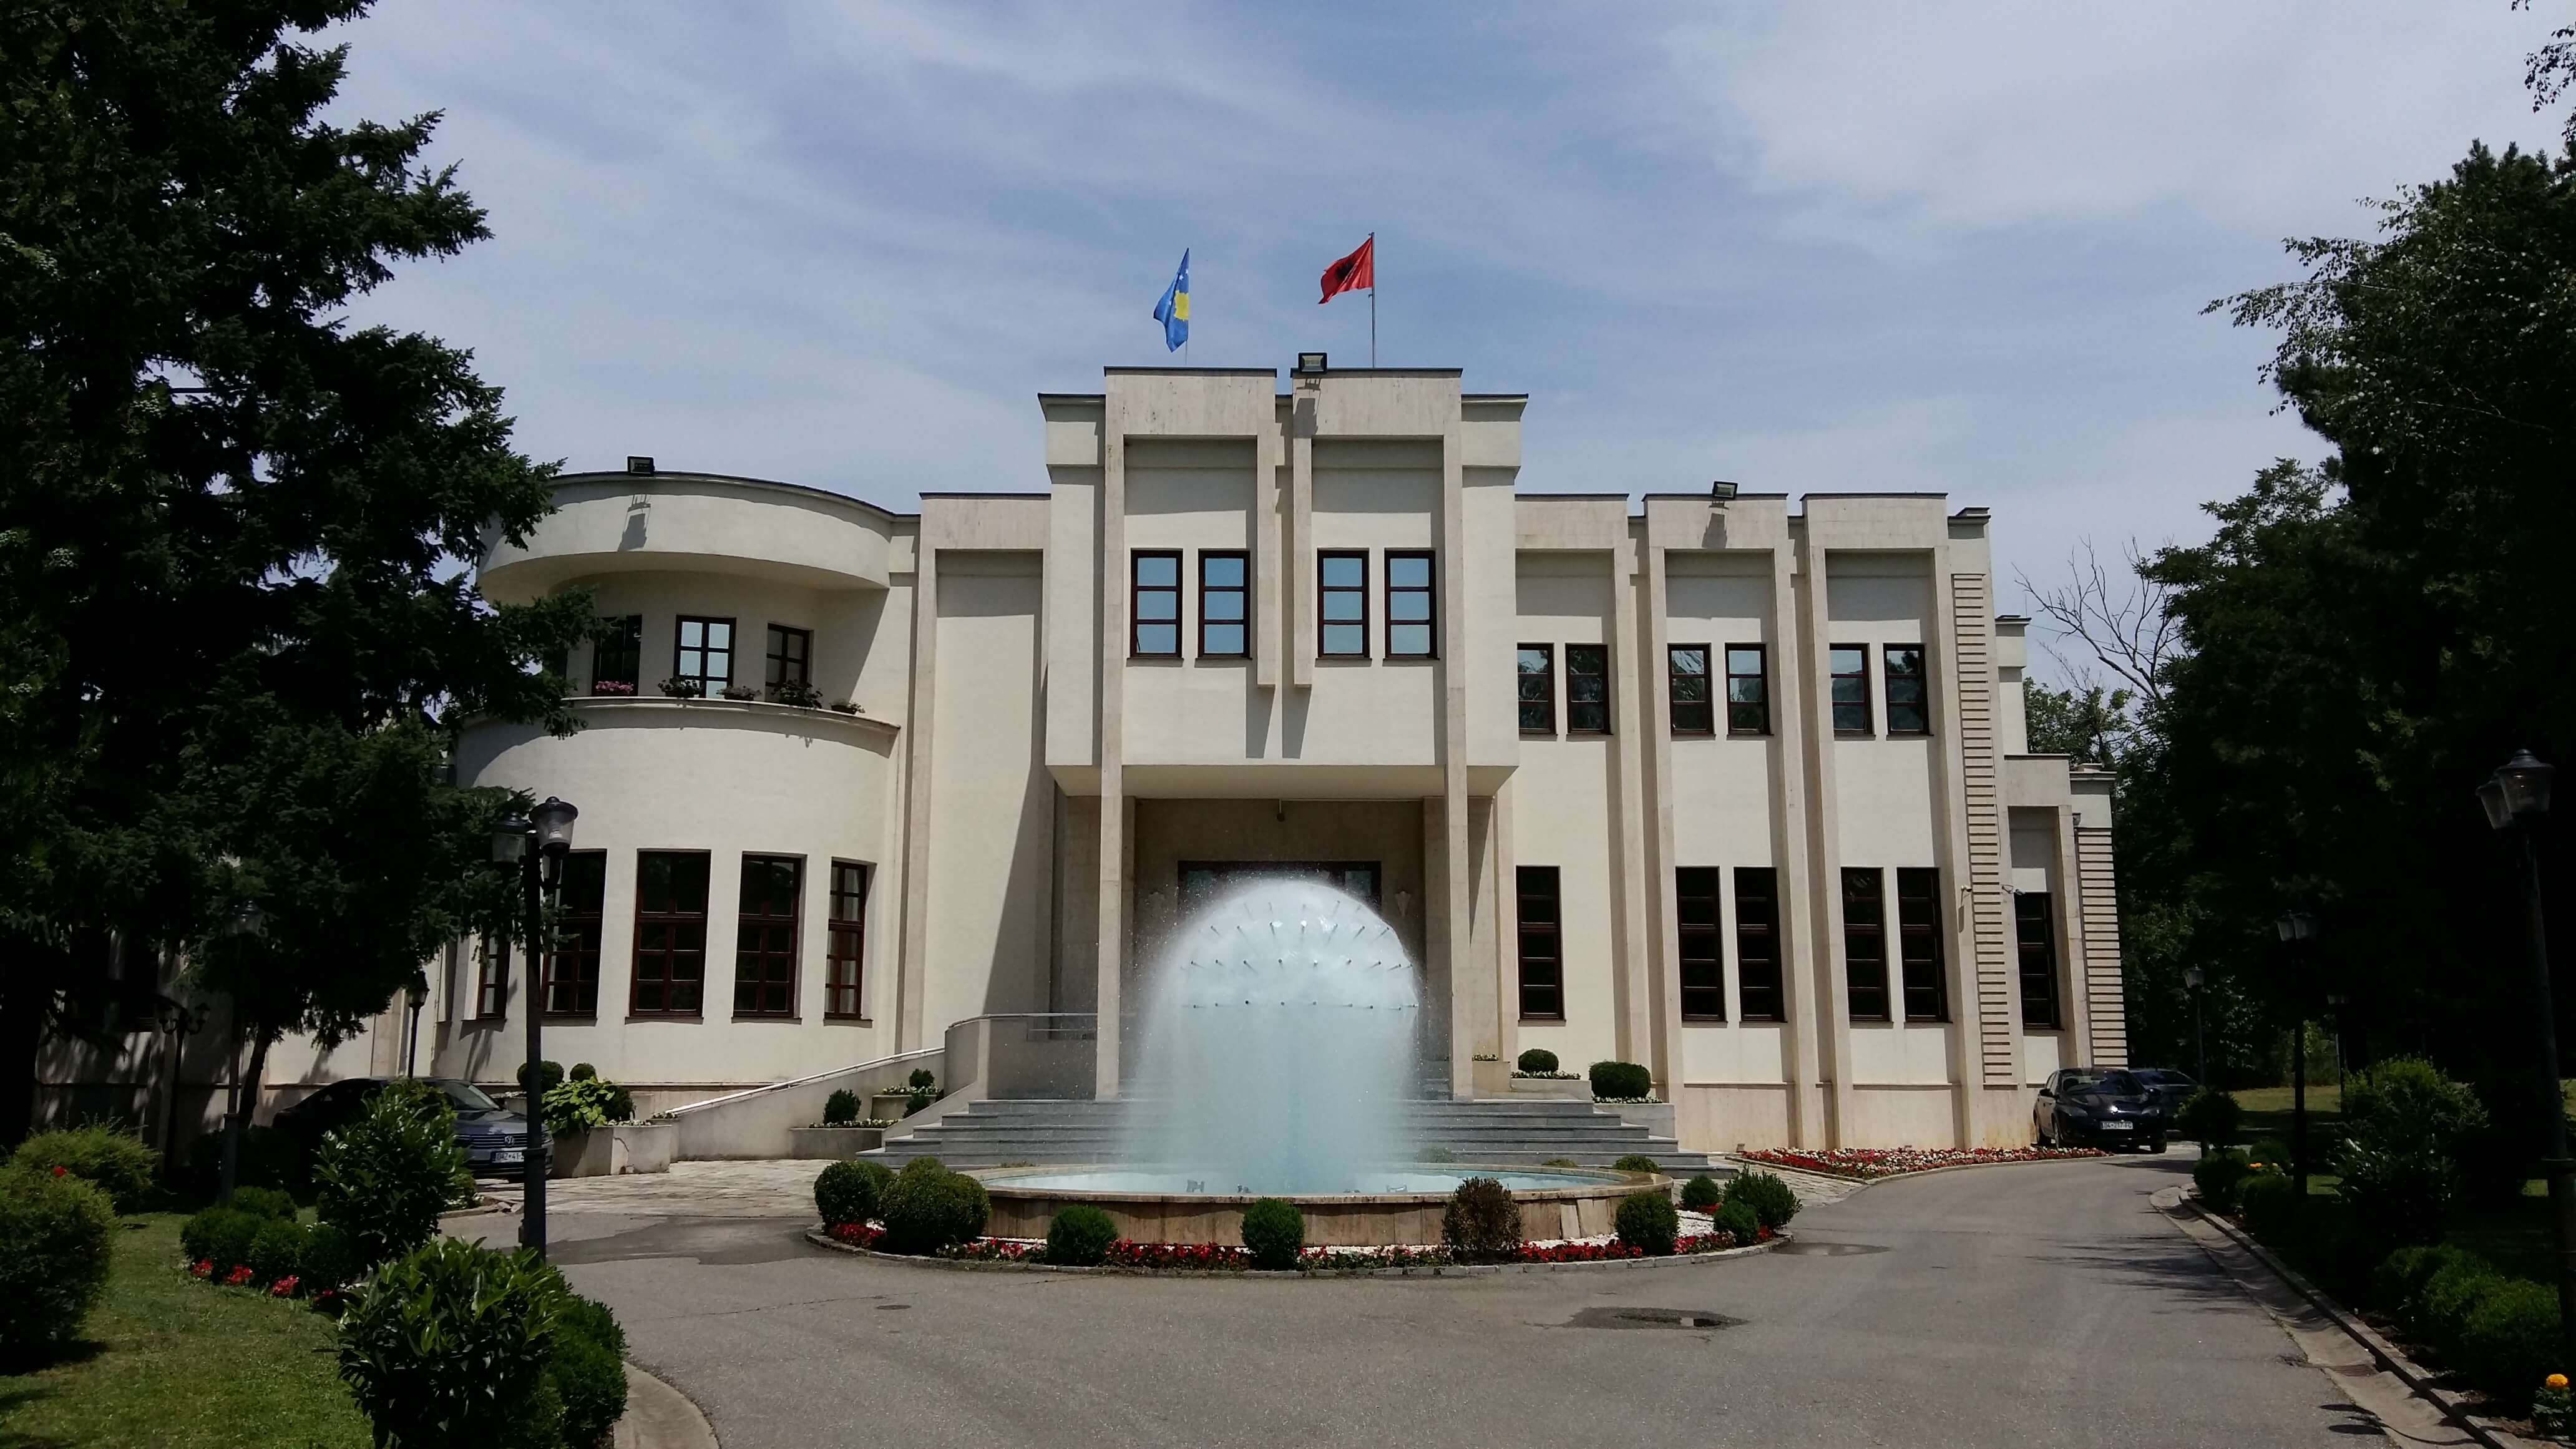 Kush përfiton nga marrëveshja e Komunës me Infrakos-in që zhbllokoi lejet ndërtimore në Prizren?